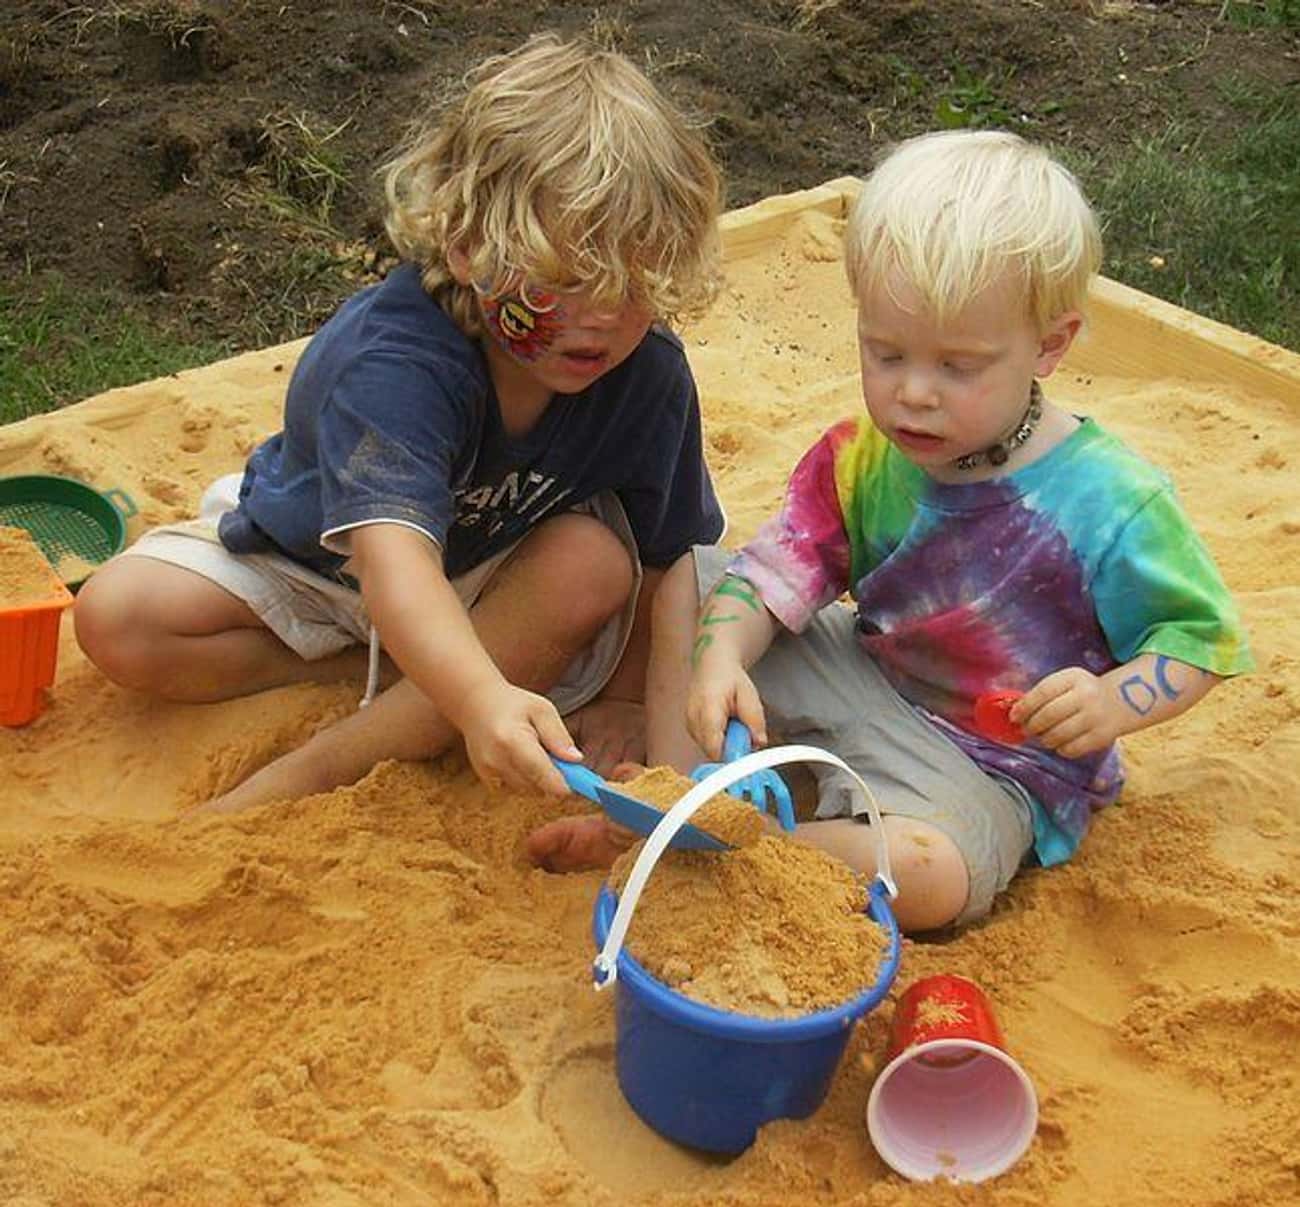 Kids in a Sandbox